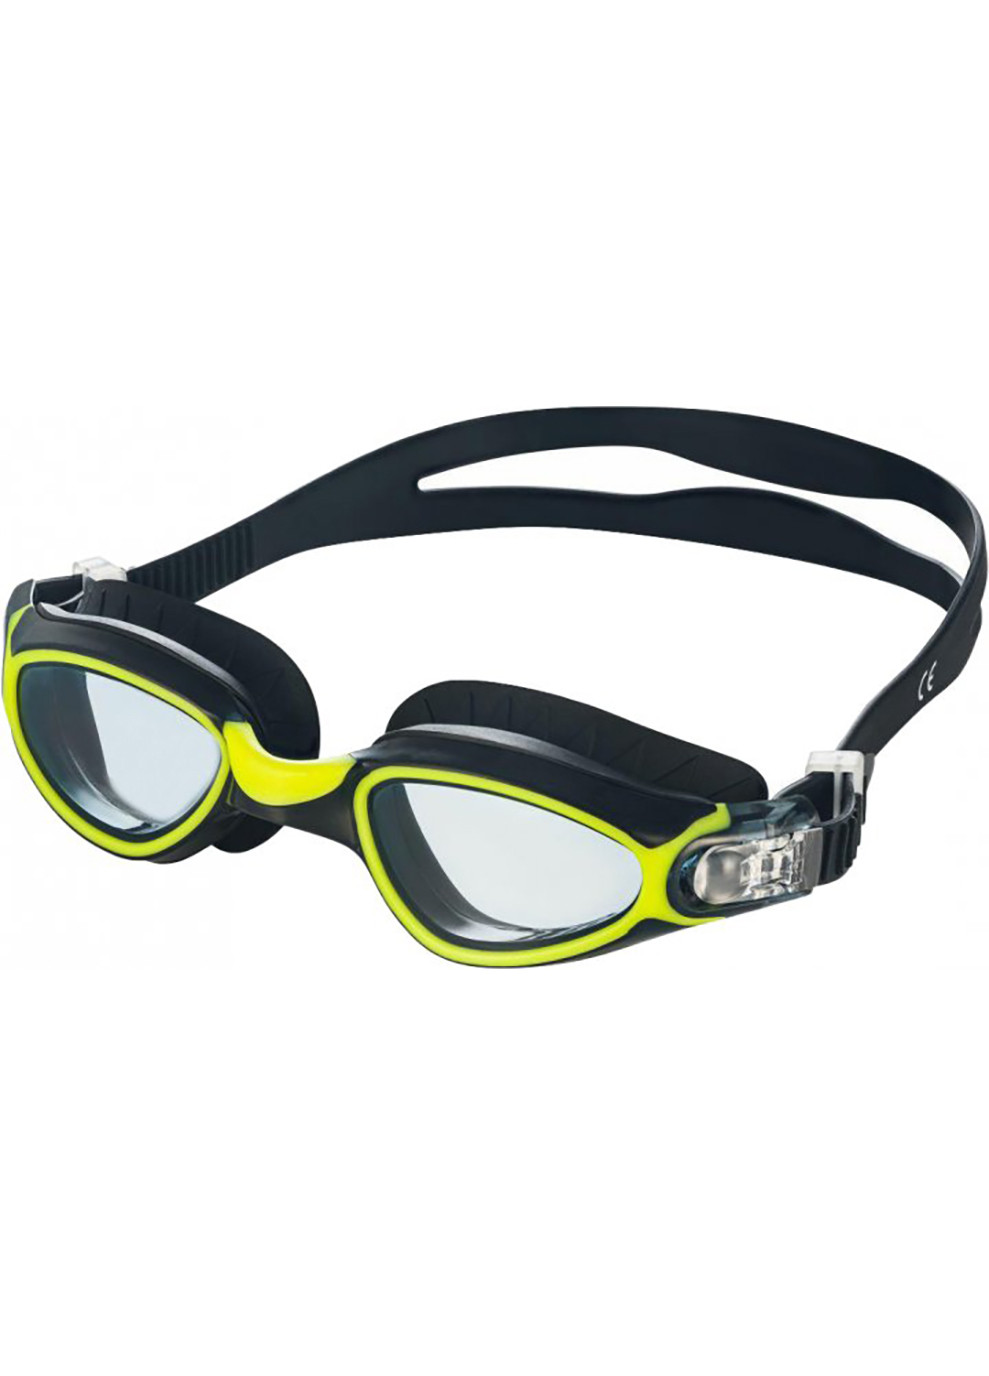 Очки для плавания CALYPSO 6369 черные, желтые (unisex) OSFM 083-38 Aqua Speed (259215269)